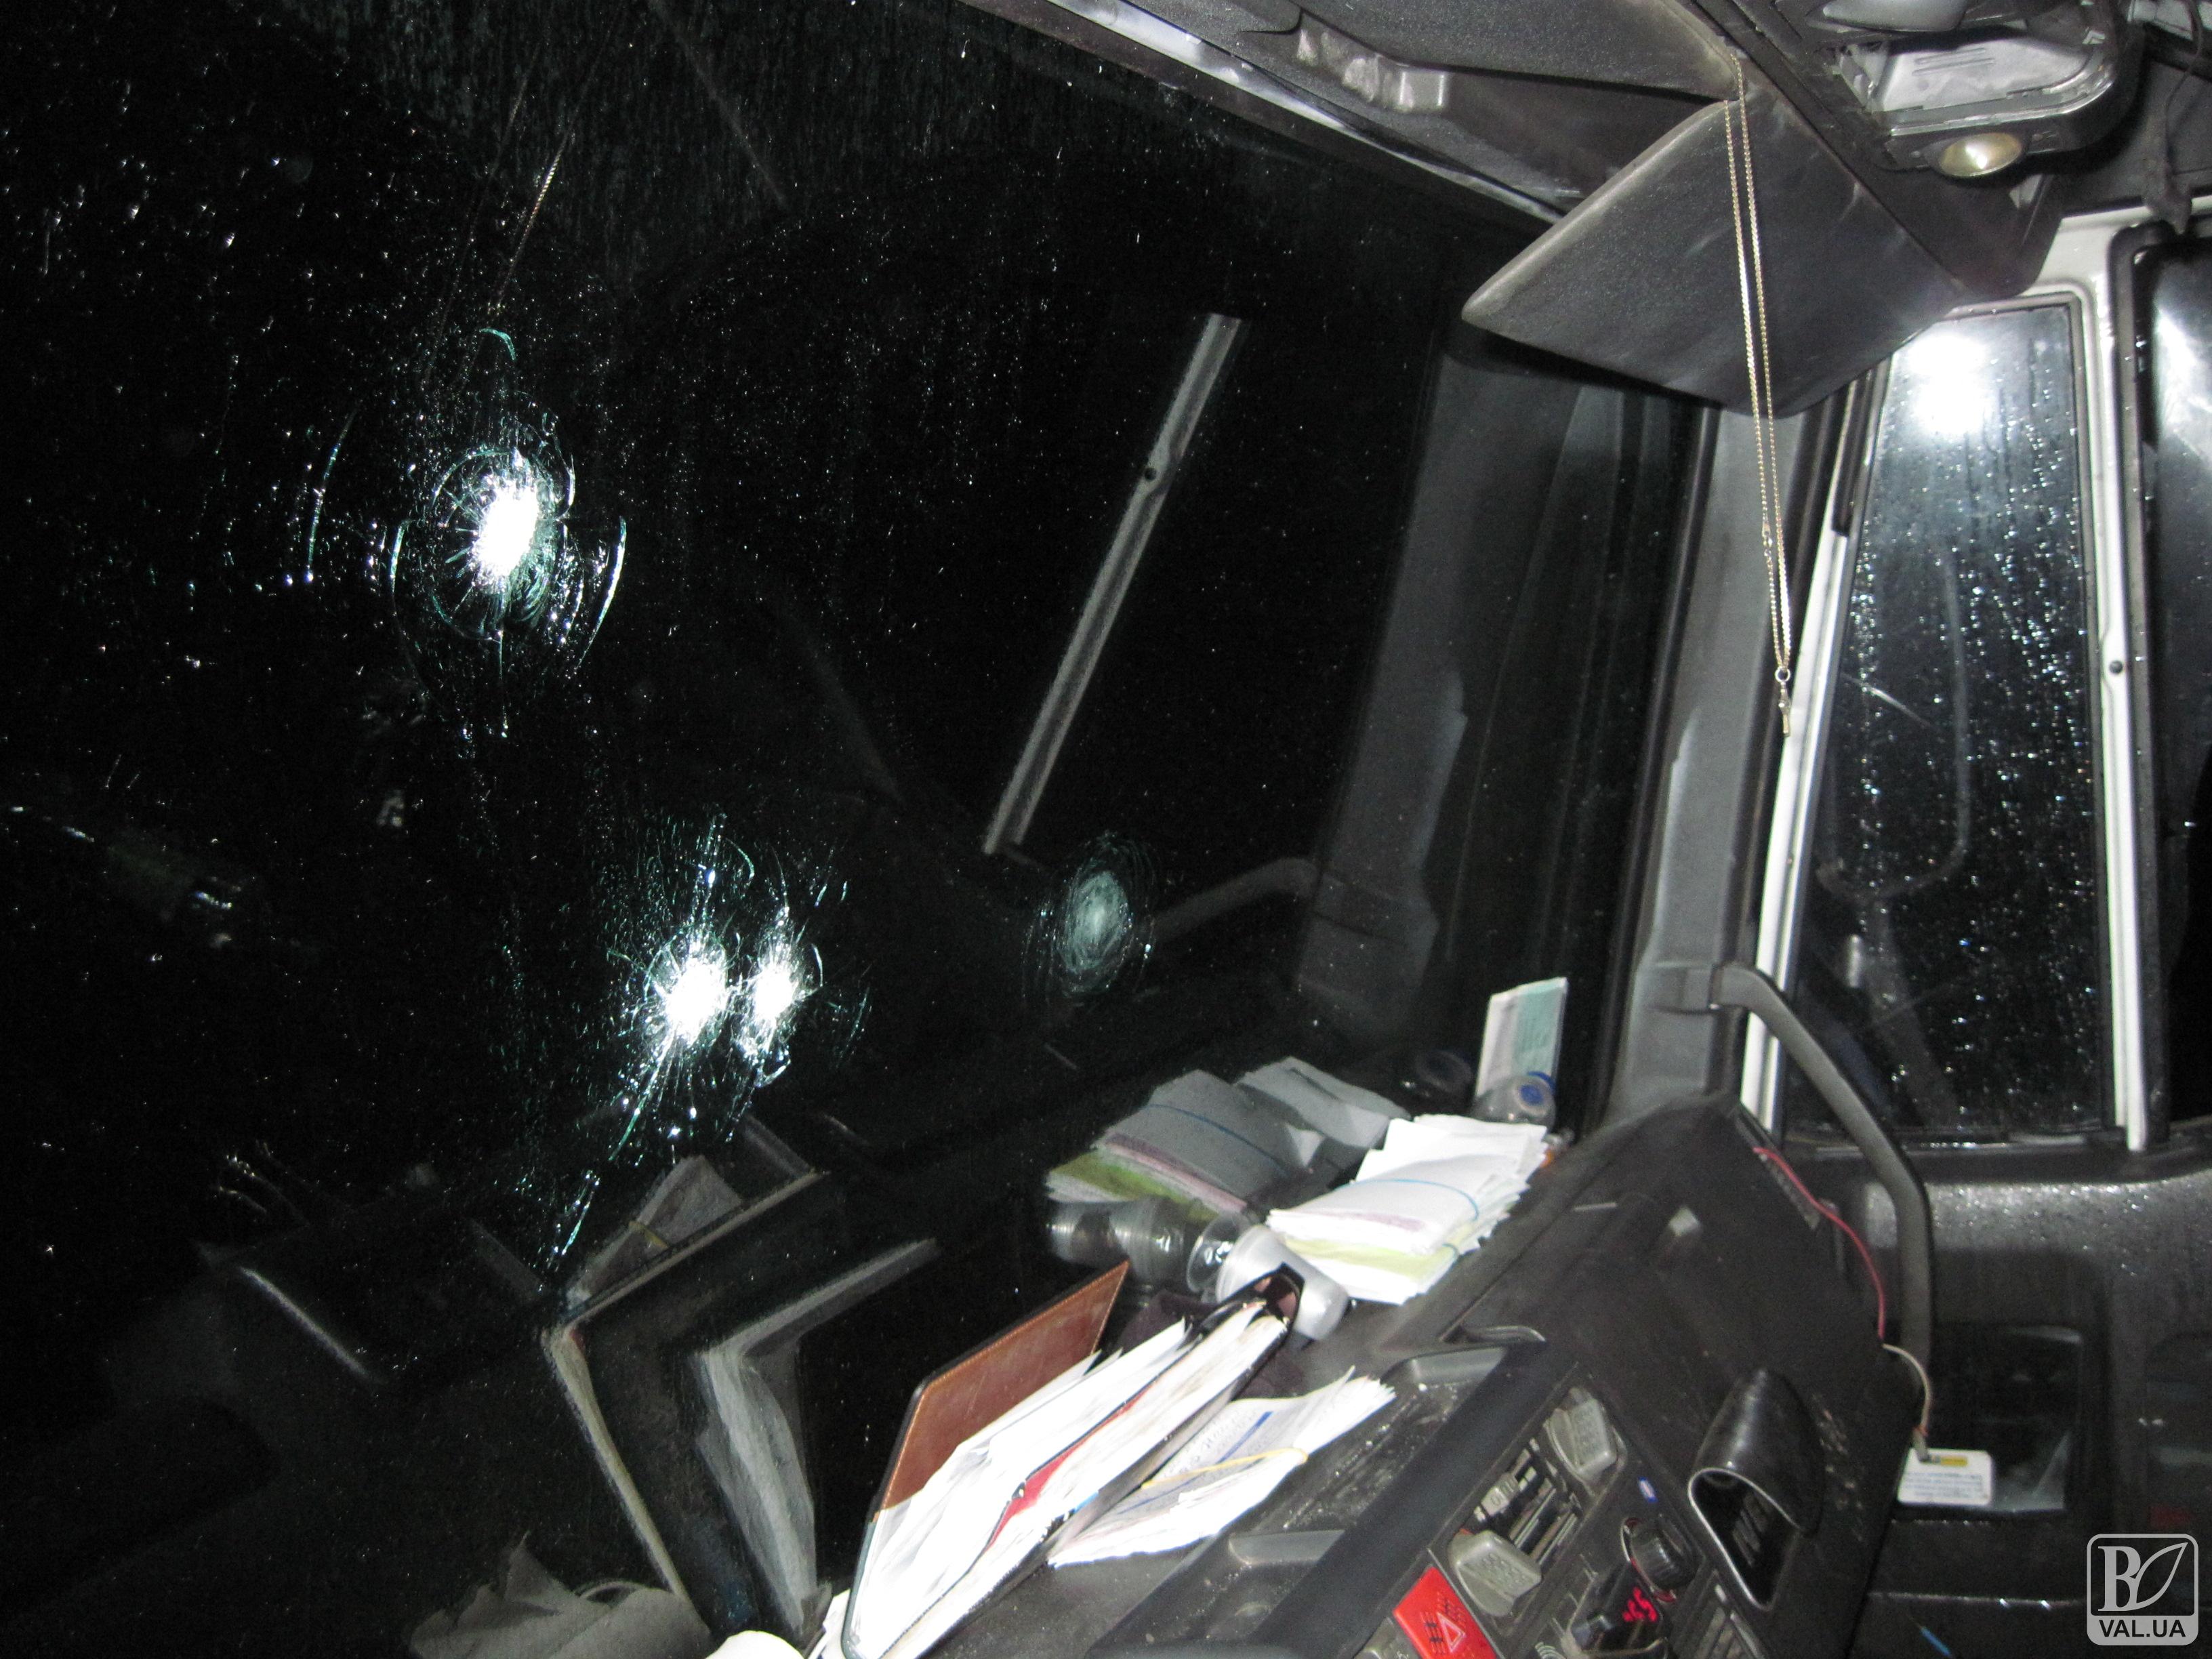 Гоп-стоп на Київській трасі: четверо в масках обстріляли вантажівку з "травмата" та забрали сейф з грошима. ФОТО